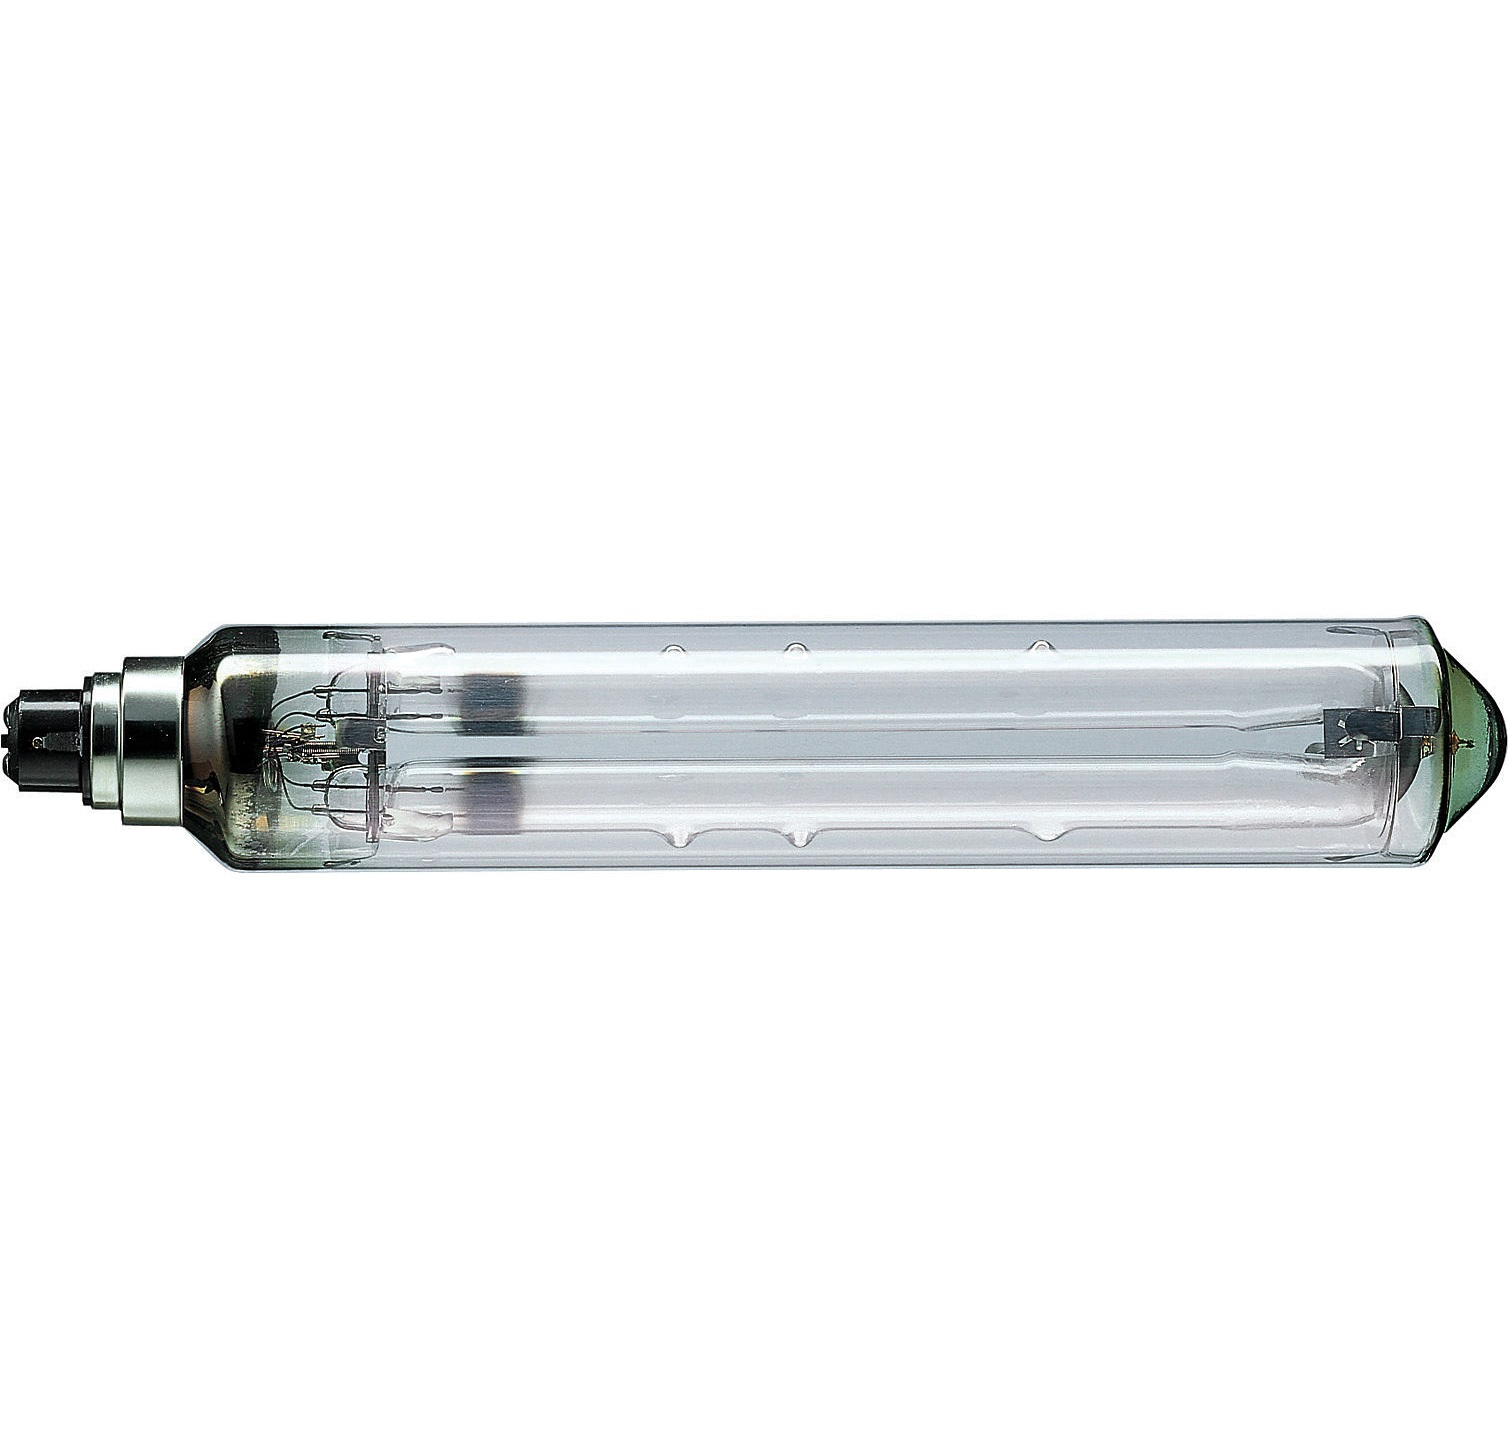 Cветильнк для наружного освещения и теплиц PHILLIPS F/XGS 104 с энергоэффективной натриевой лампой низкого давления SOX-E 36W